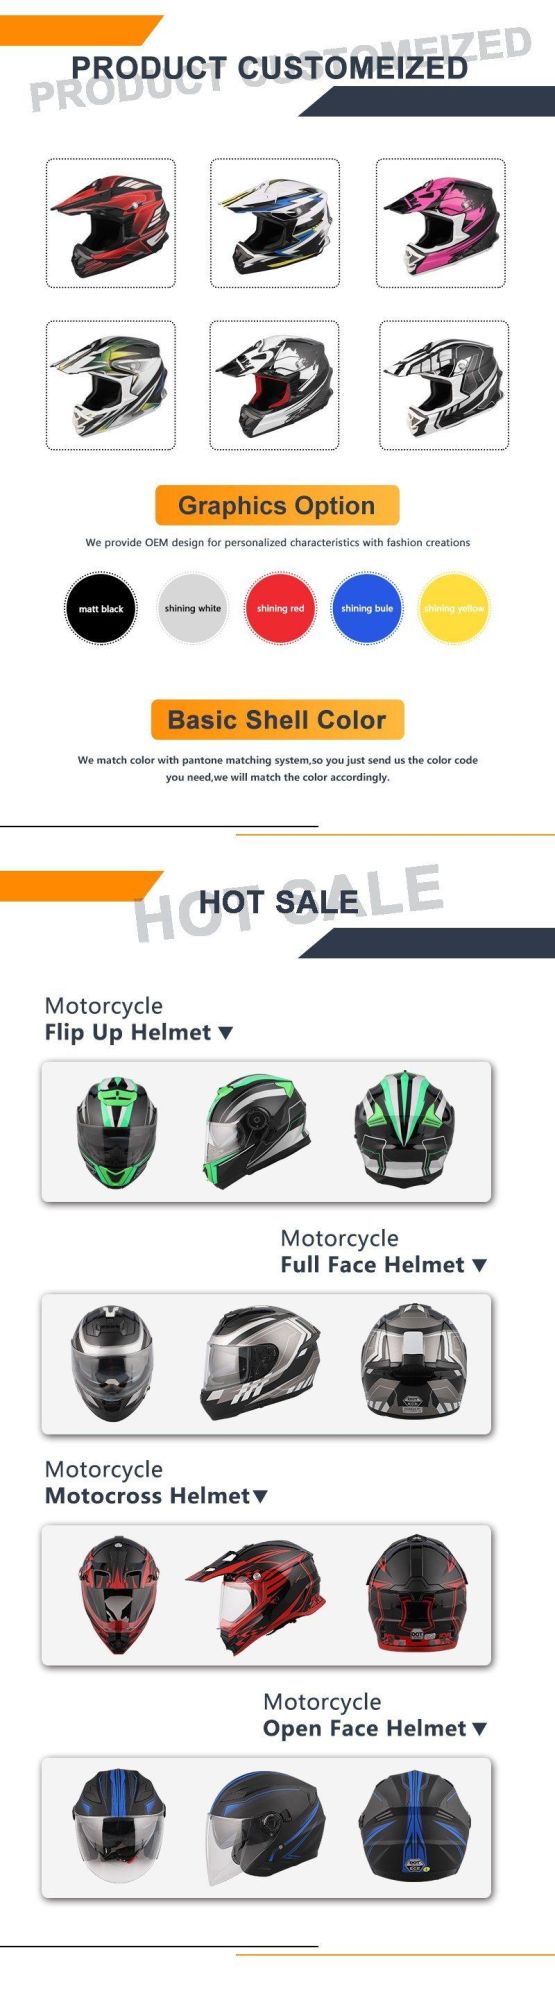 Mx Helmet Hot Sale Motorcycle Helmet for Beginners /Kids/ Youths